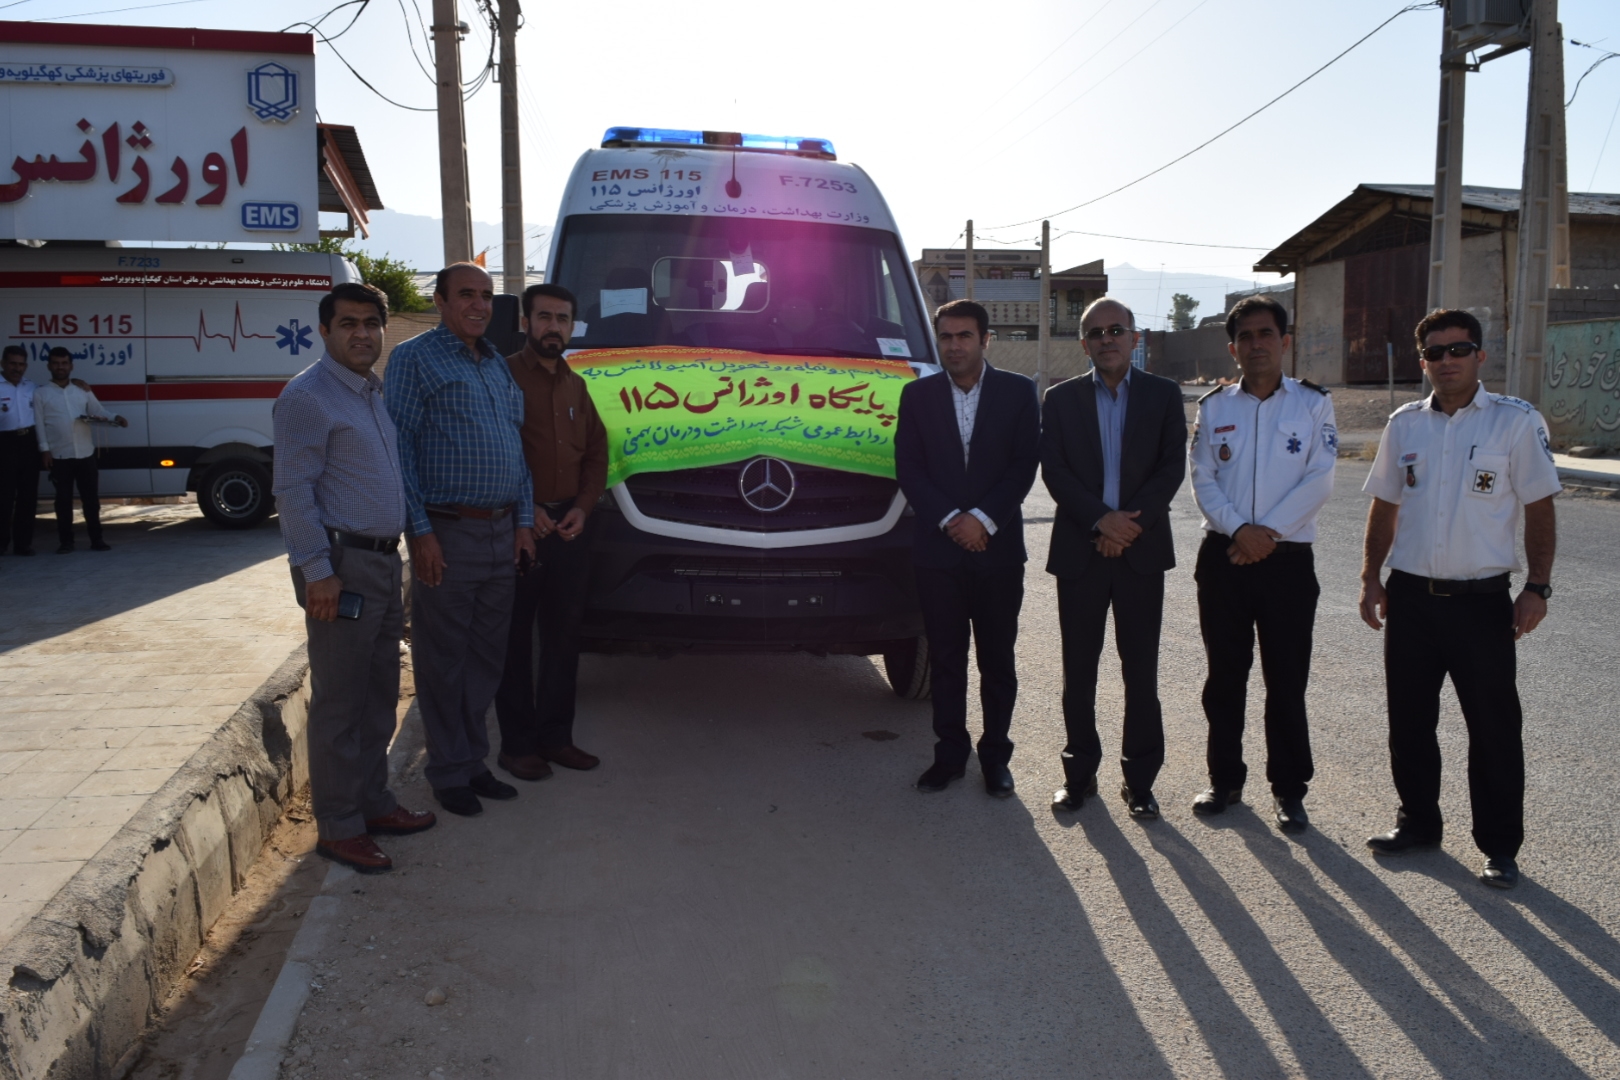  رونمایی از آمبولانس فوریت های پزشکی 115 جاده ای سرآسیاب - ممبی و همچنین افتتاح مرکز دندانپزشکی در ممبی